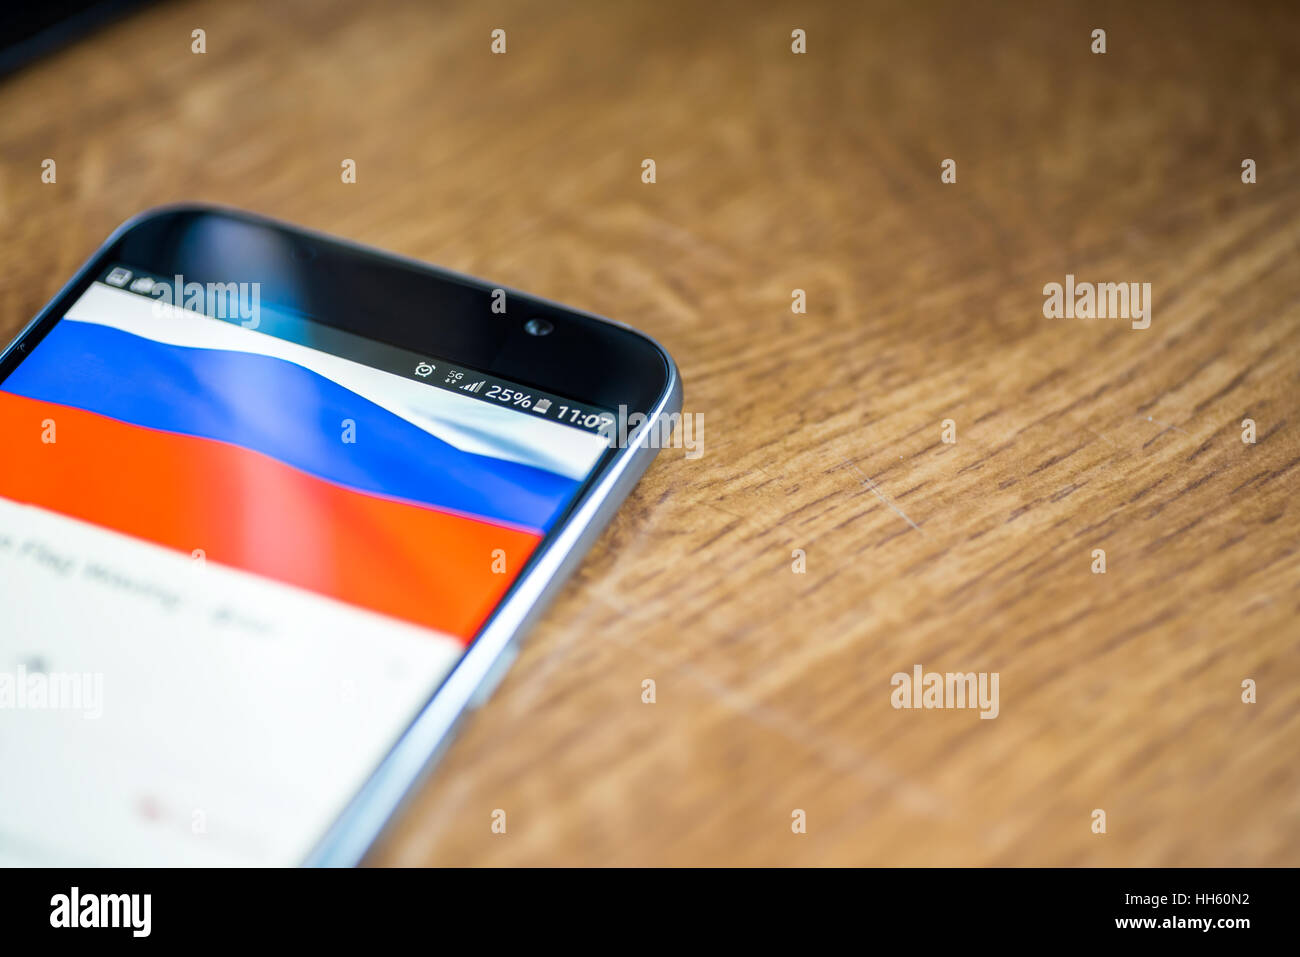 Sur fond de bois avec smartphone 5G Réseau inscription 25  % et la Russie drapeau sur l'écran. Banque D'Images